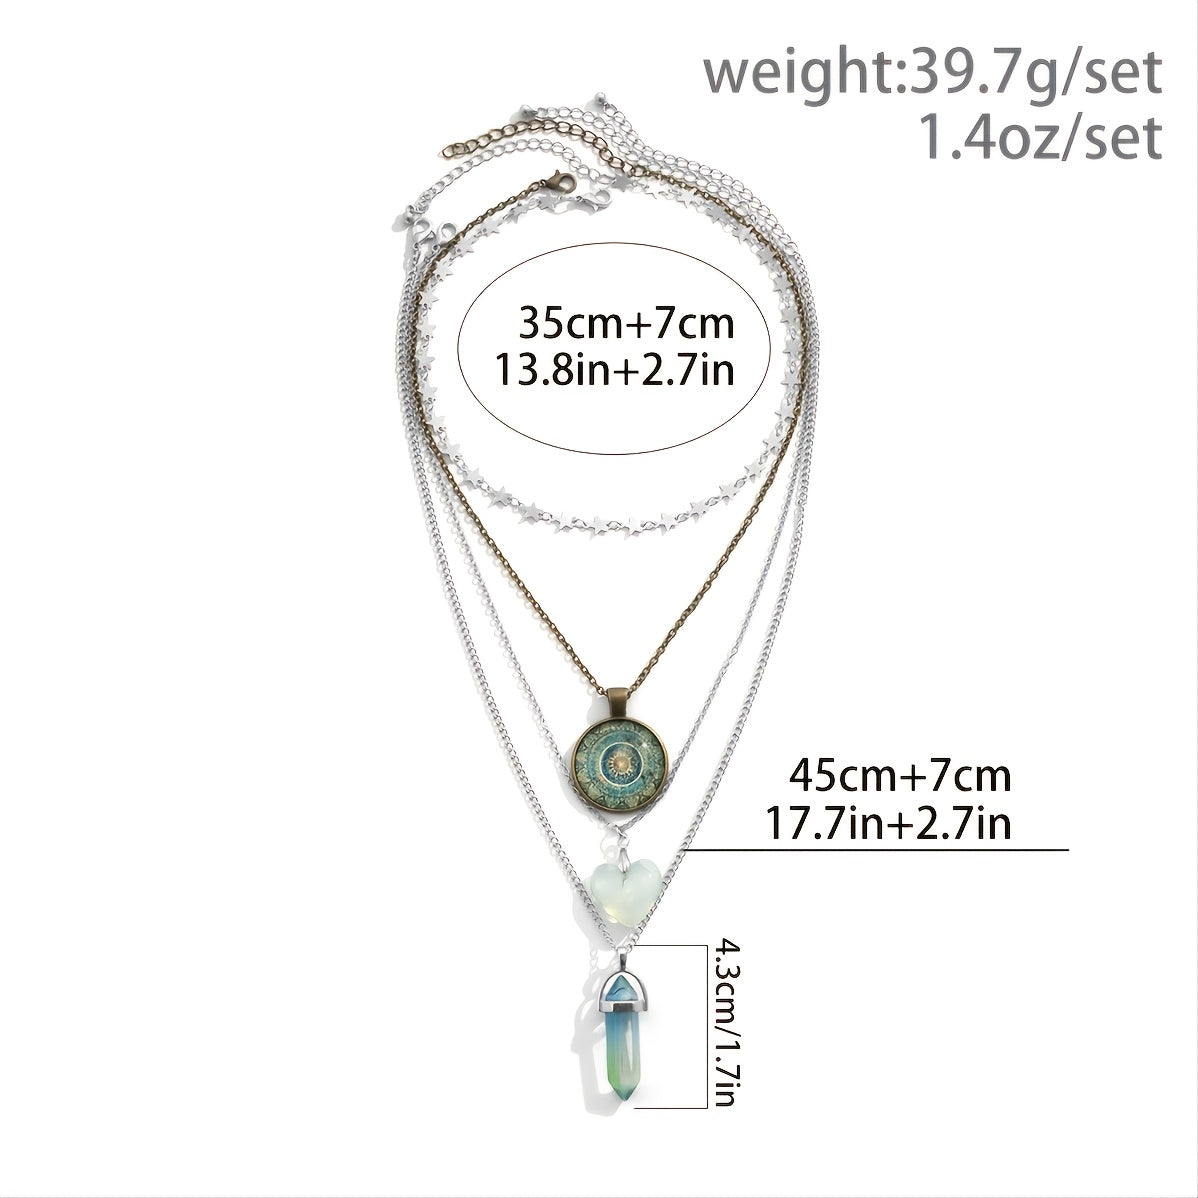 Gorgeous Vintage Heart Crystal Pendant Necklace Set - 4 Pieces!